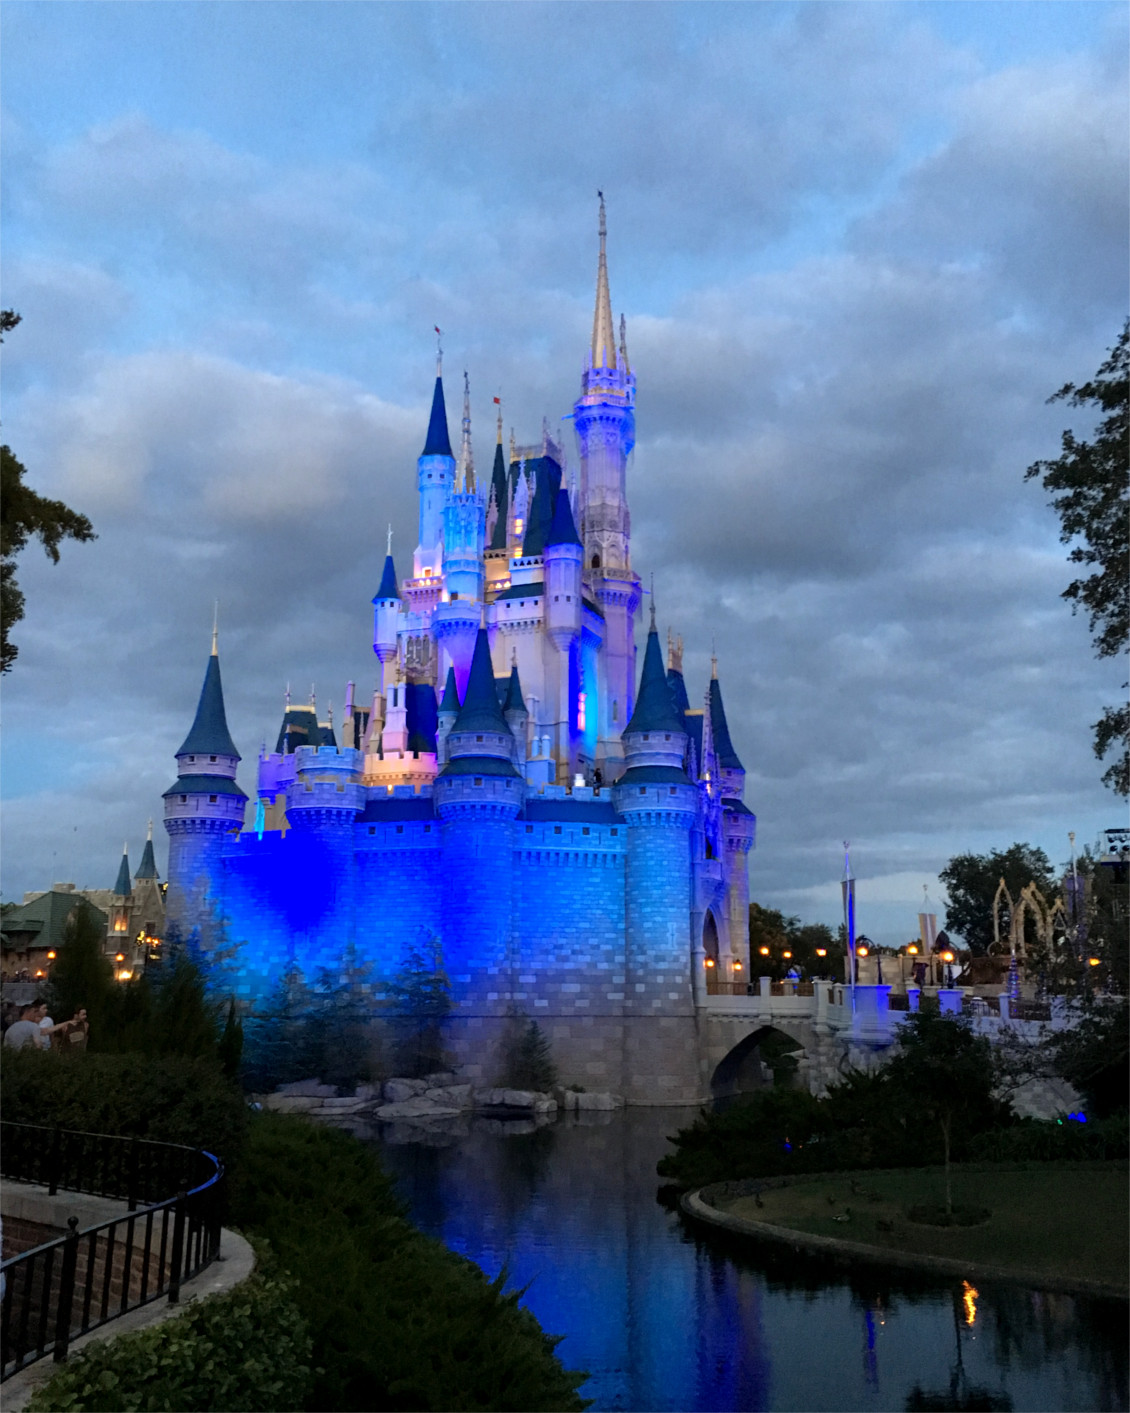 Disney World Orlando Florida - Cinderella Castle